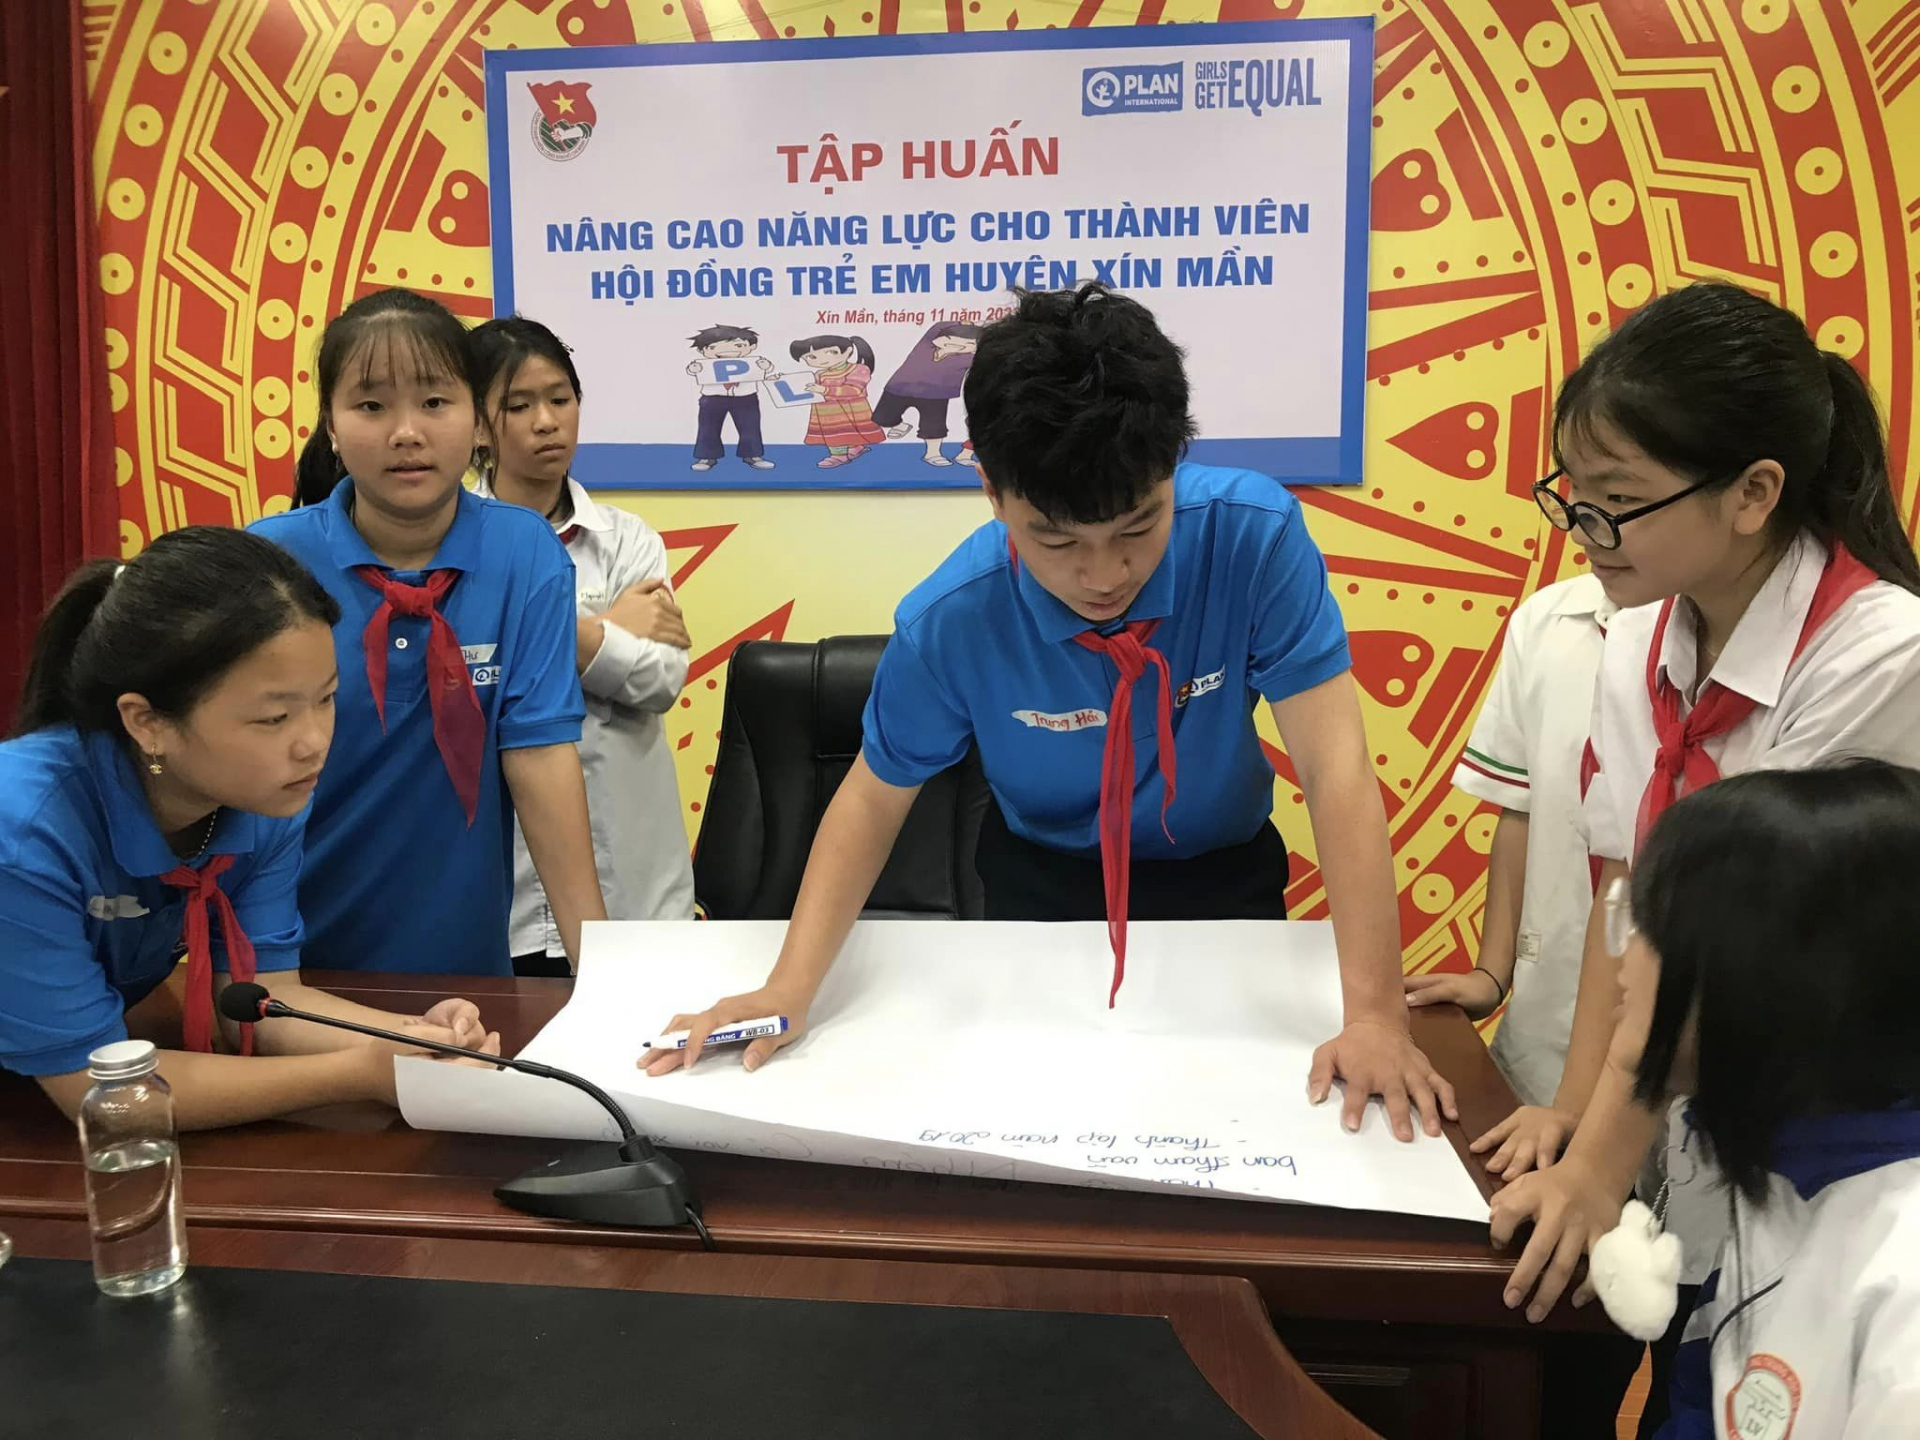 Plan hỗ trợ tập huấn nâng cao năng lực cho thành viên Hội đồng Trẻ em huyện Xín Mần.
